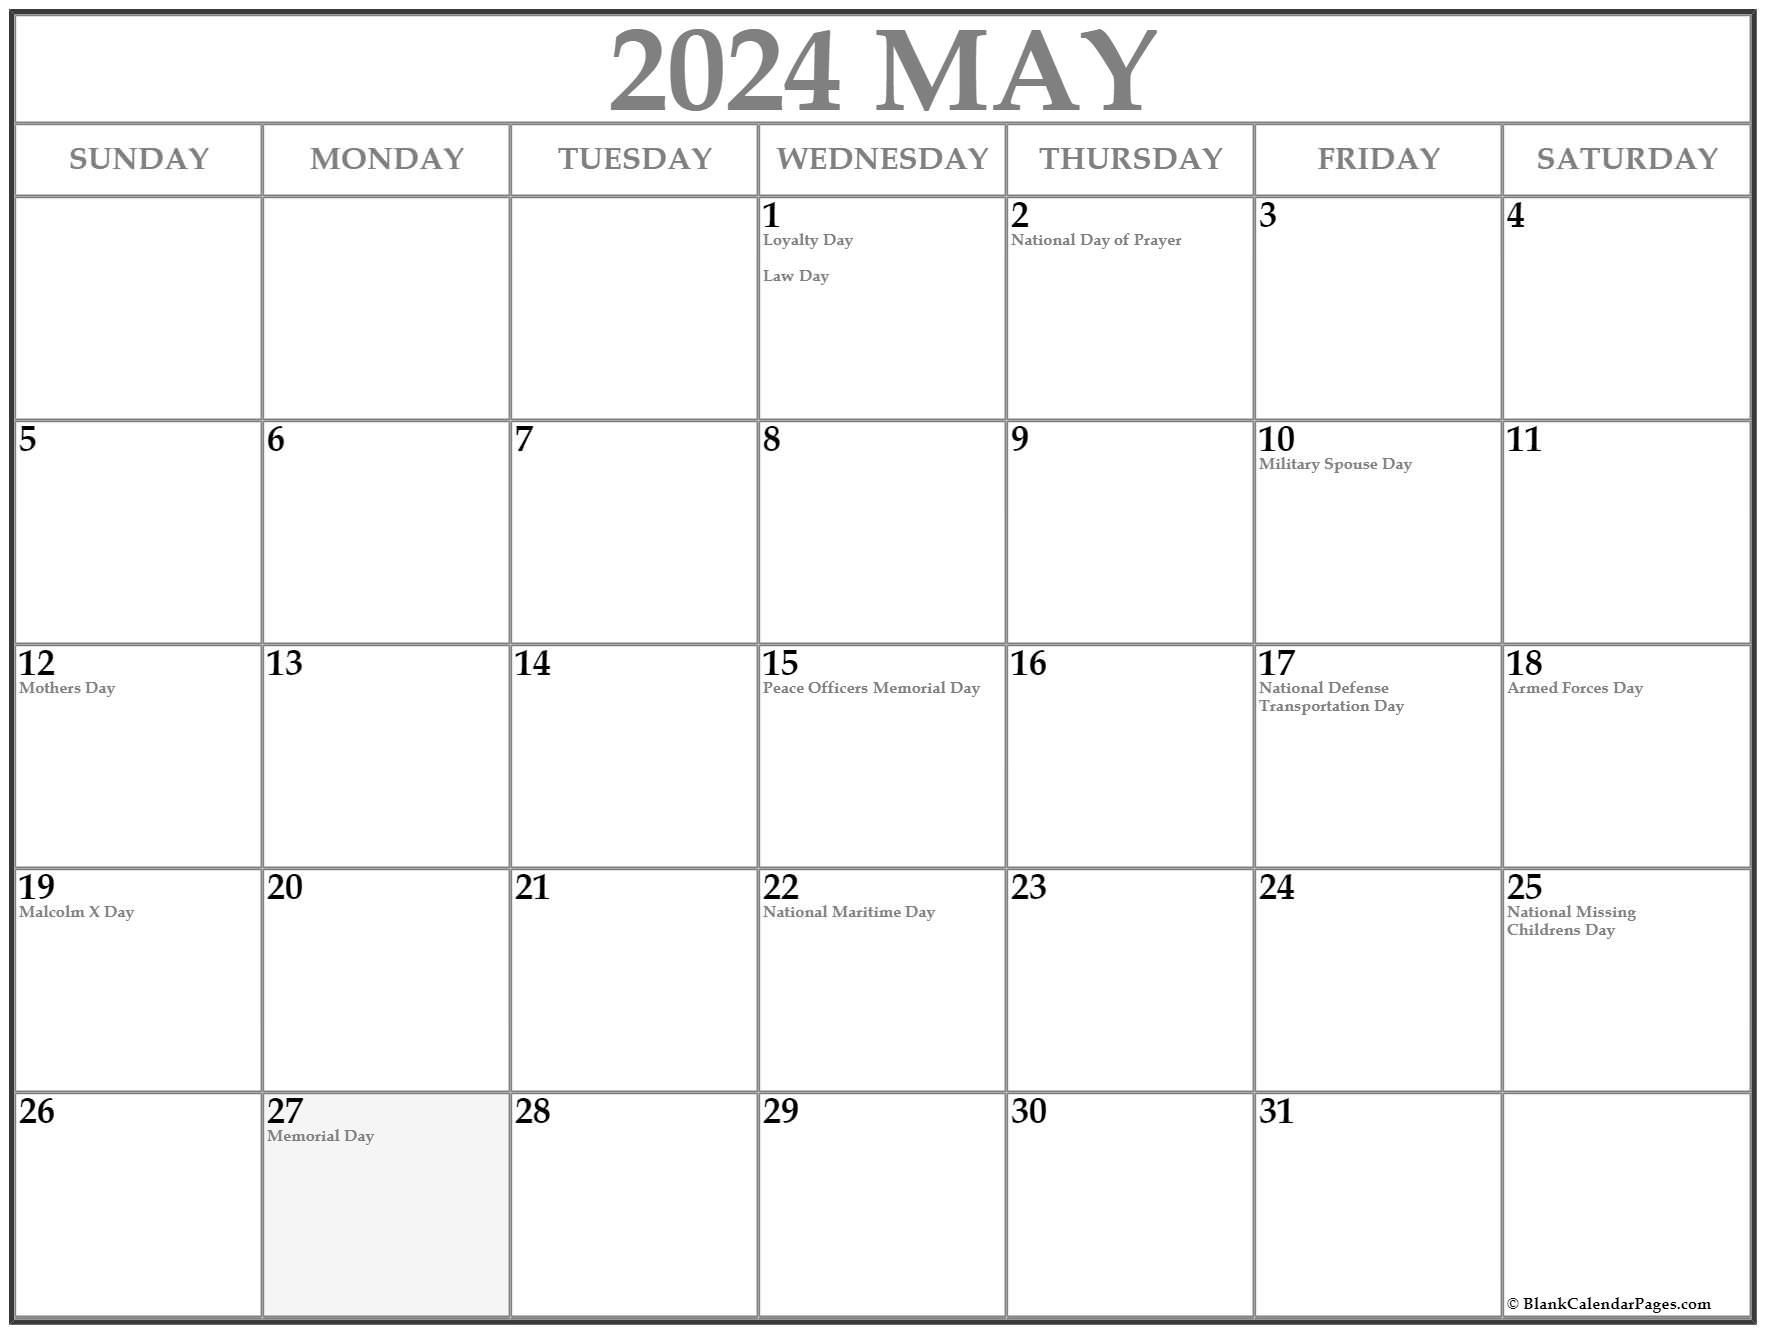 May 2022 Holiday Calendar May 2022 With Holidays Calendar